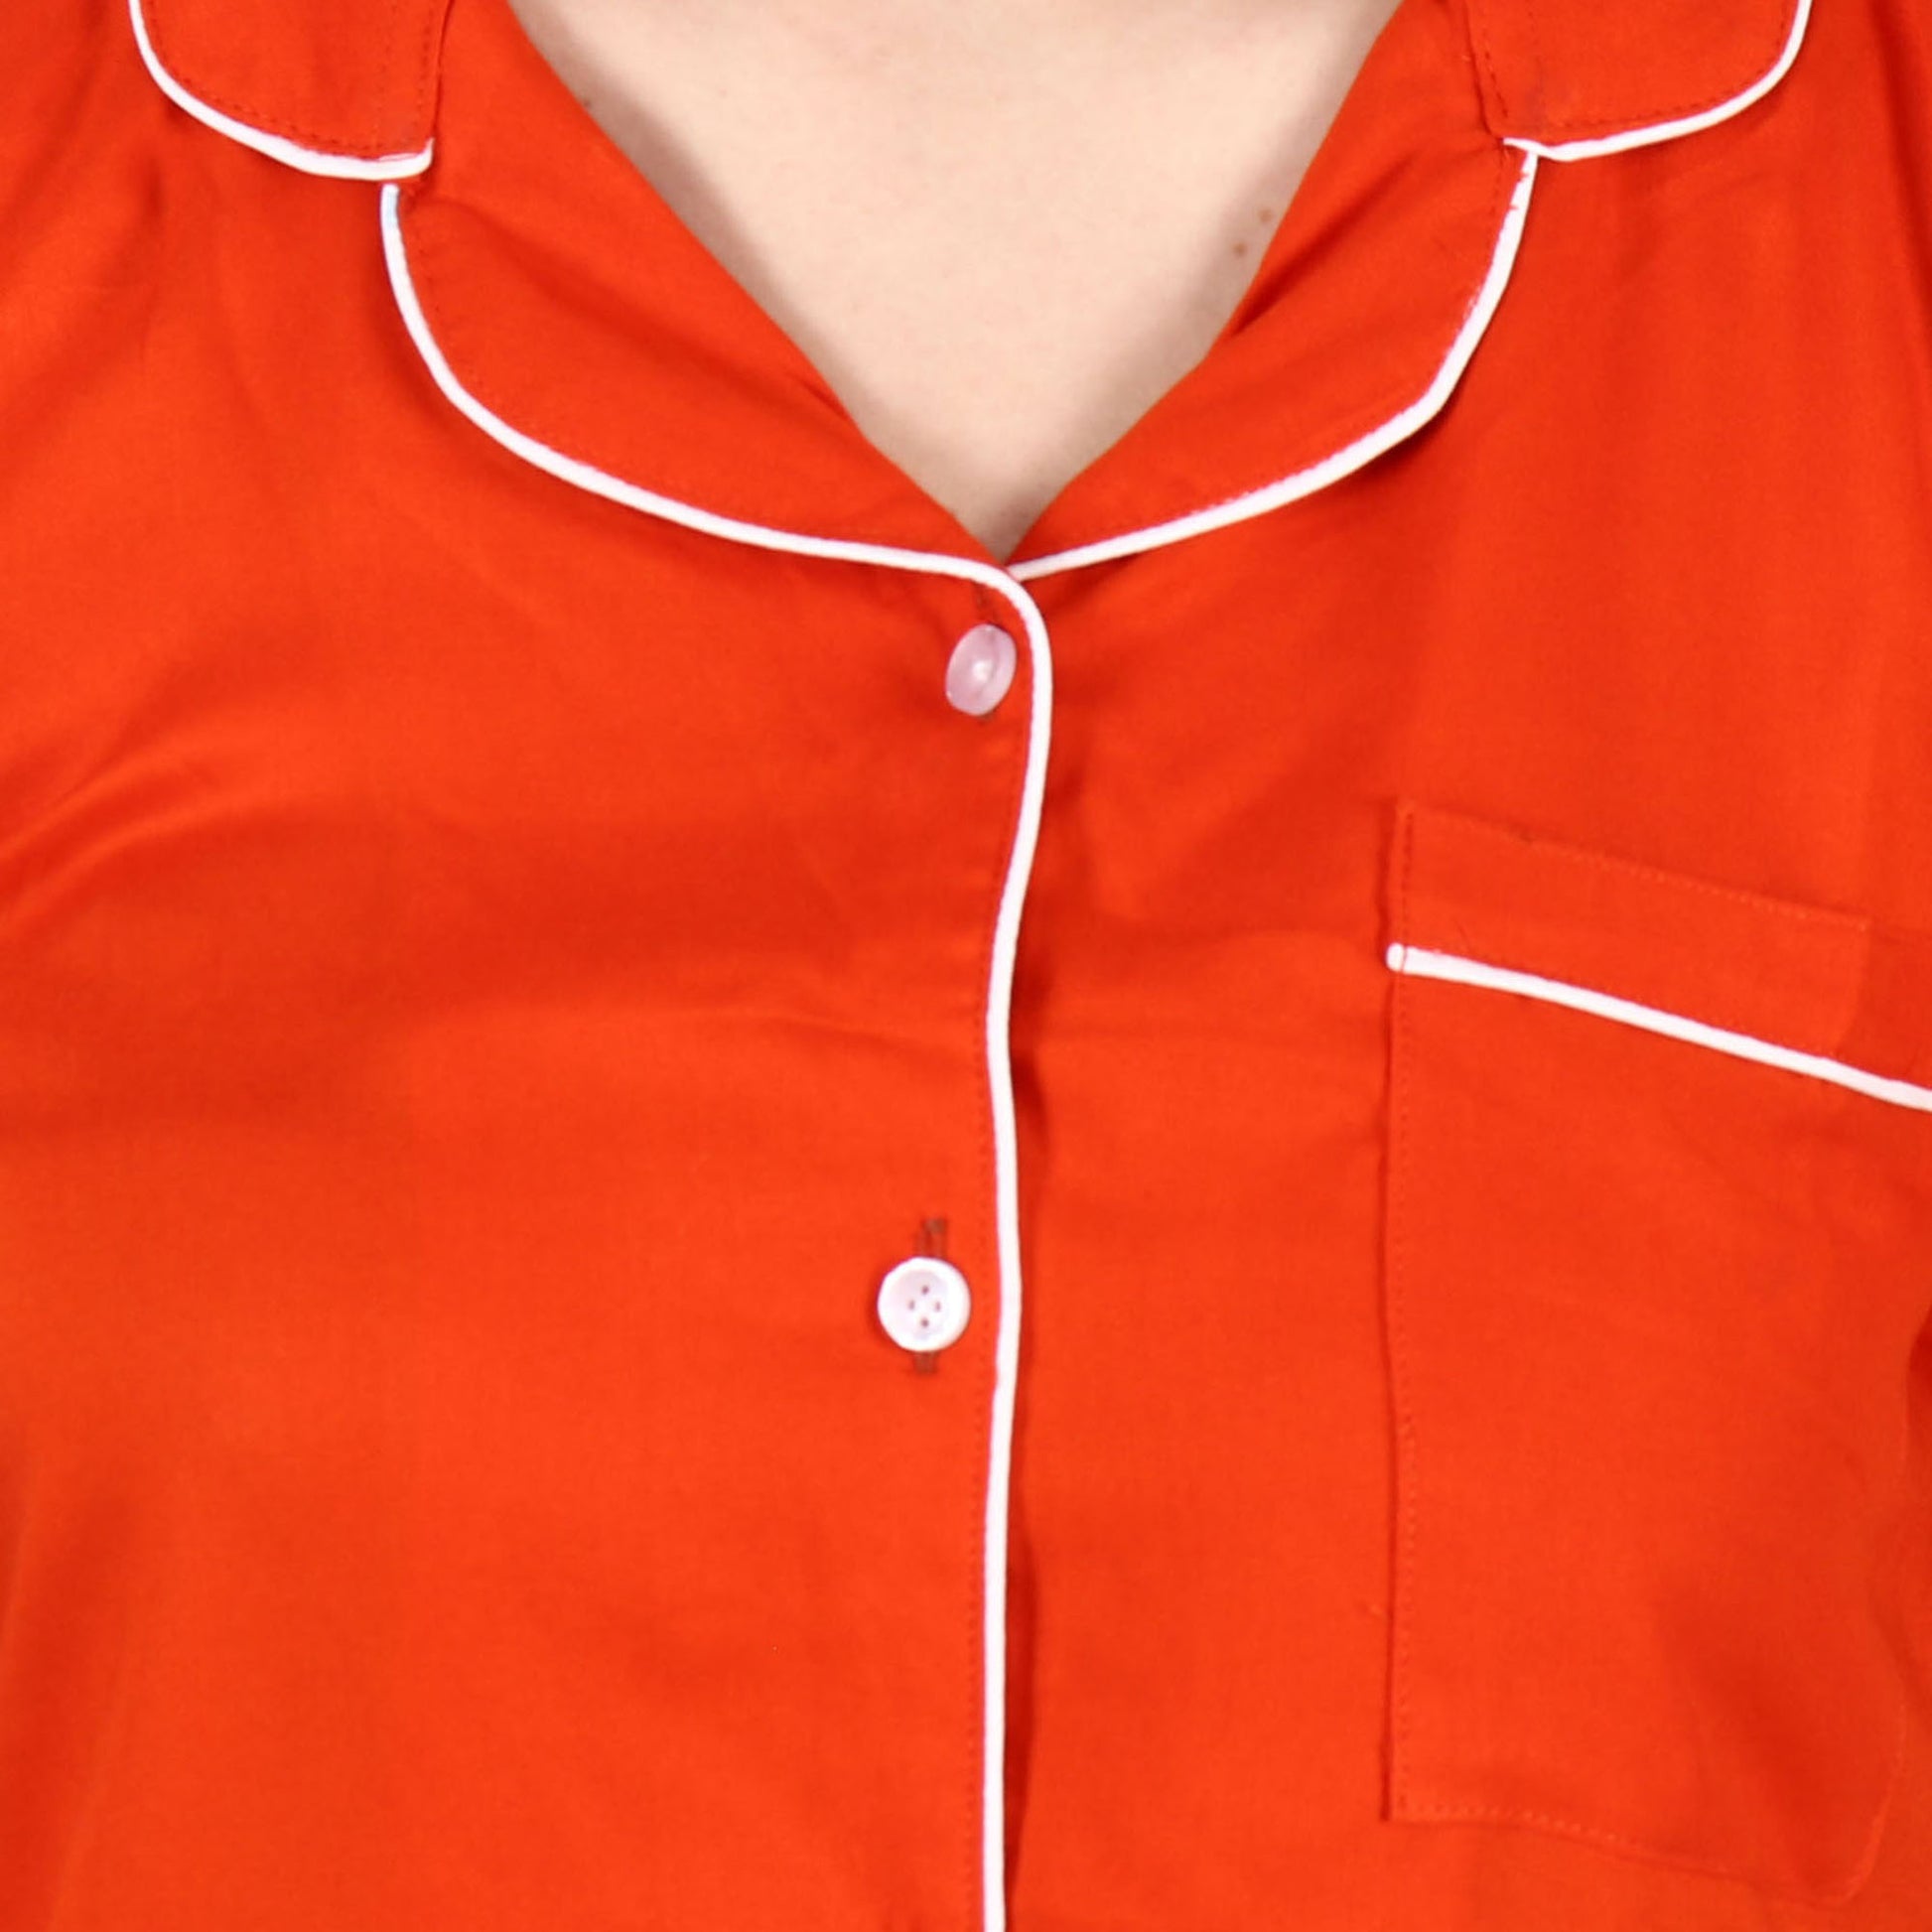 Solid Orange Shorts Suit | Apella.